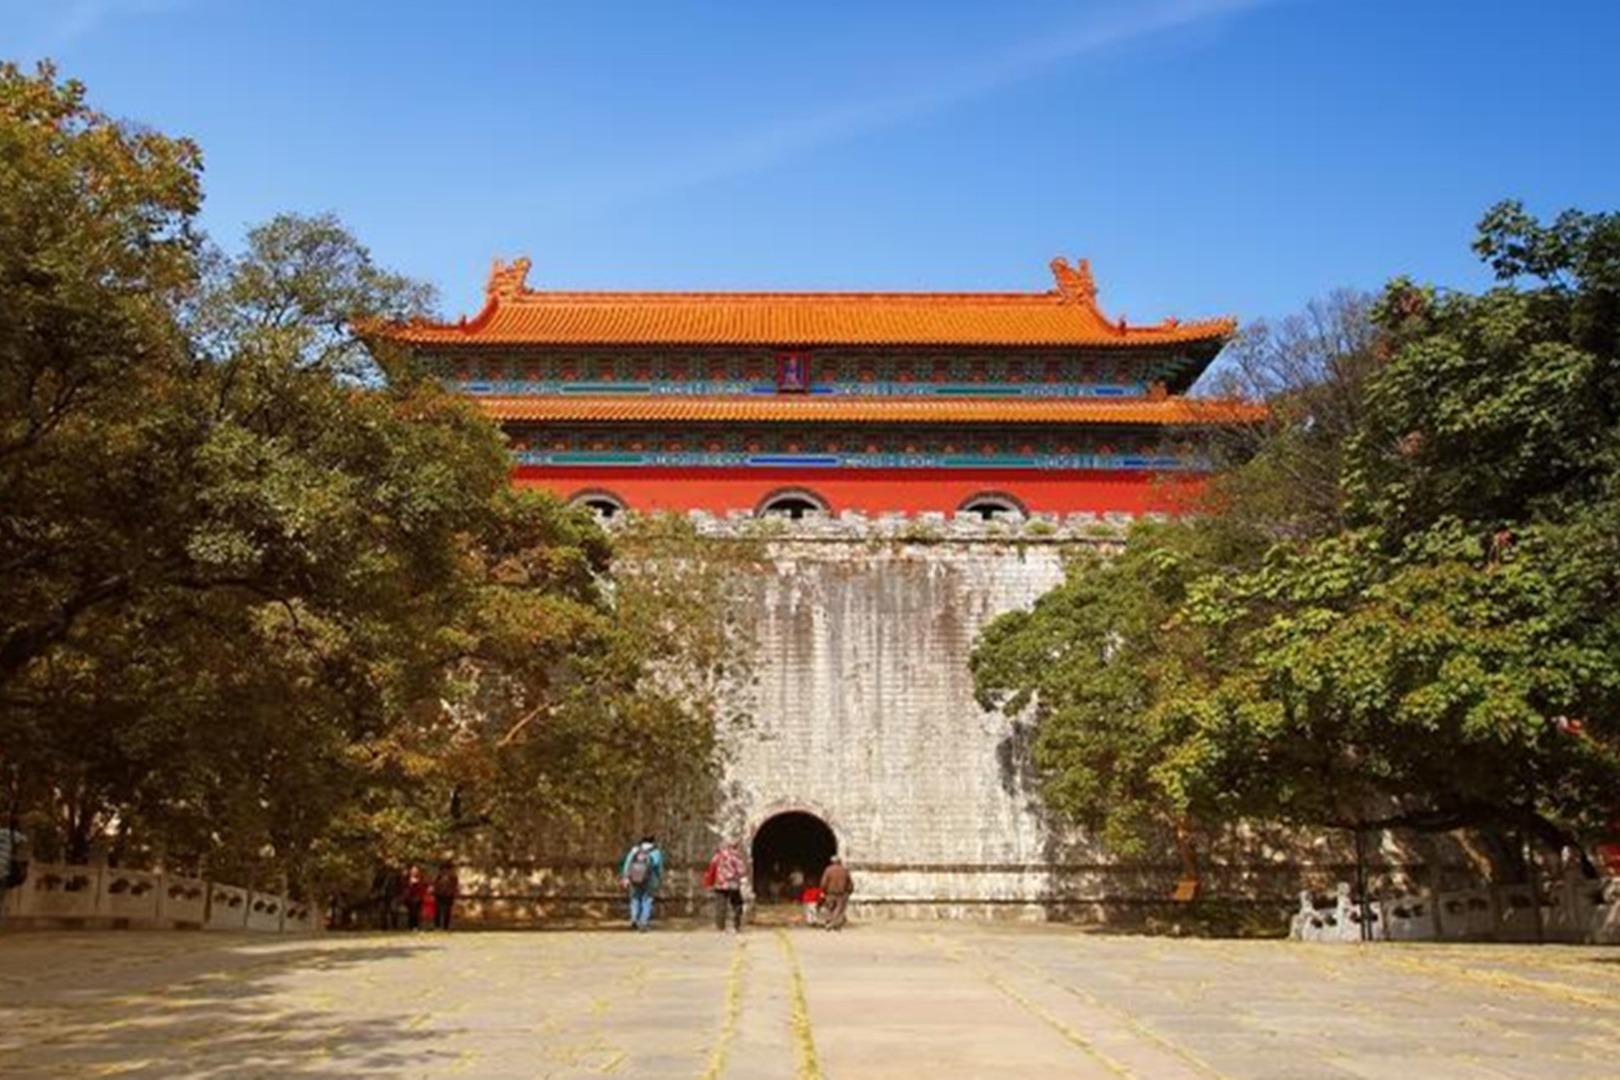 “明清皇家第一陵”，此后五百年，中国陵墓都以它为标准建造